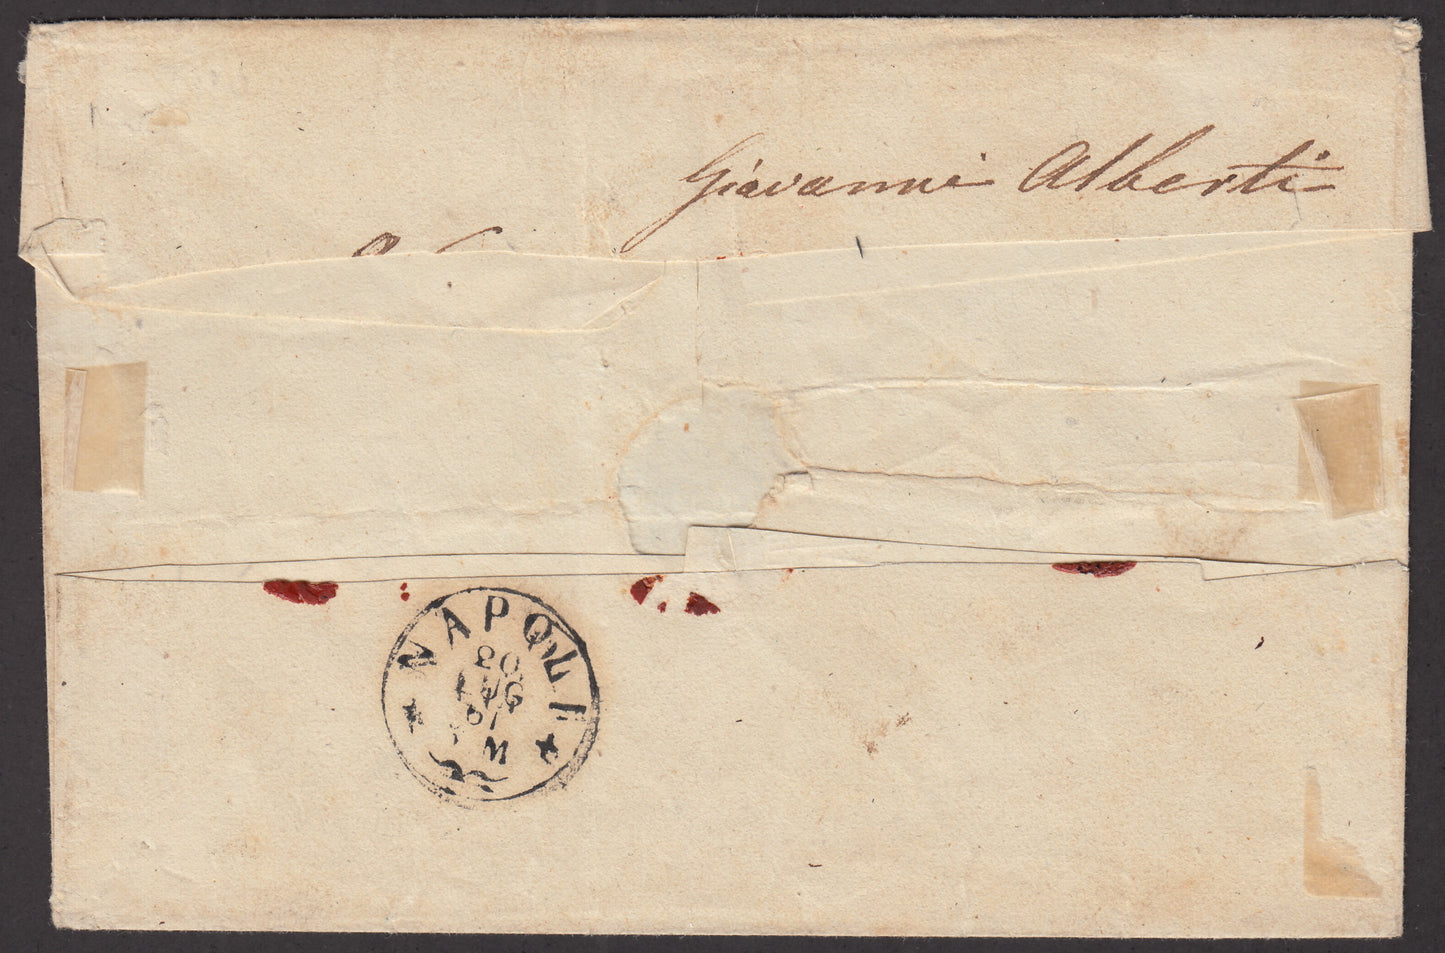 BA23_83 - 1861 - Lettera spedita da Foggia per Napoli 18/7/61 affrancata c. 20 grana giallo isolato, raro! (23a).